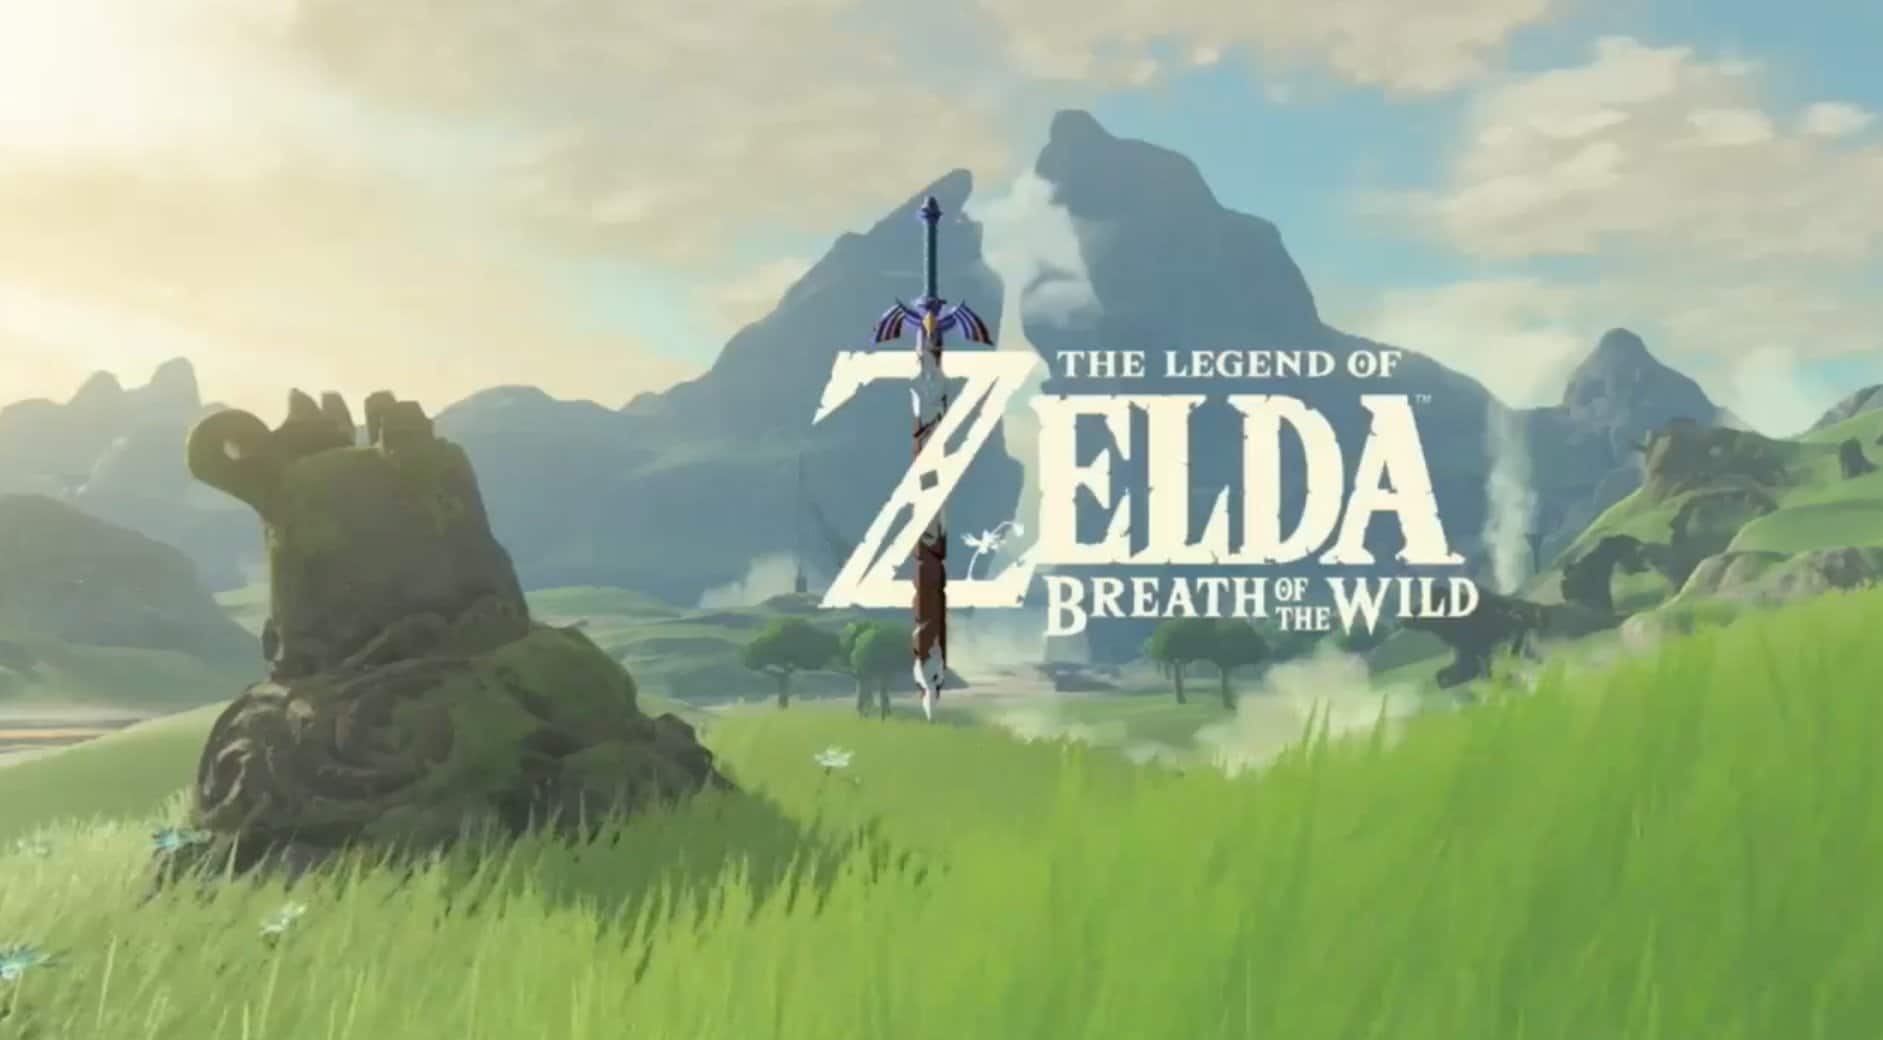 The Legend of Zelda Breath of the Wild anunciado para el 3 de marzo-GamersRd